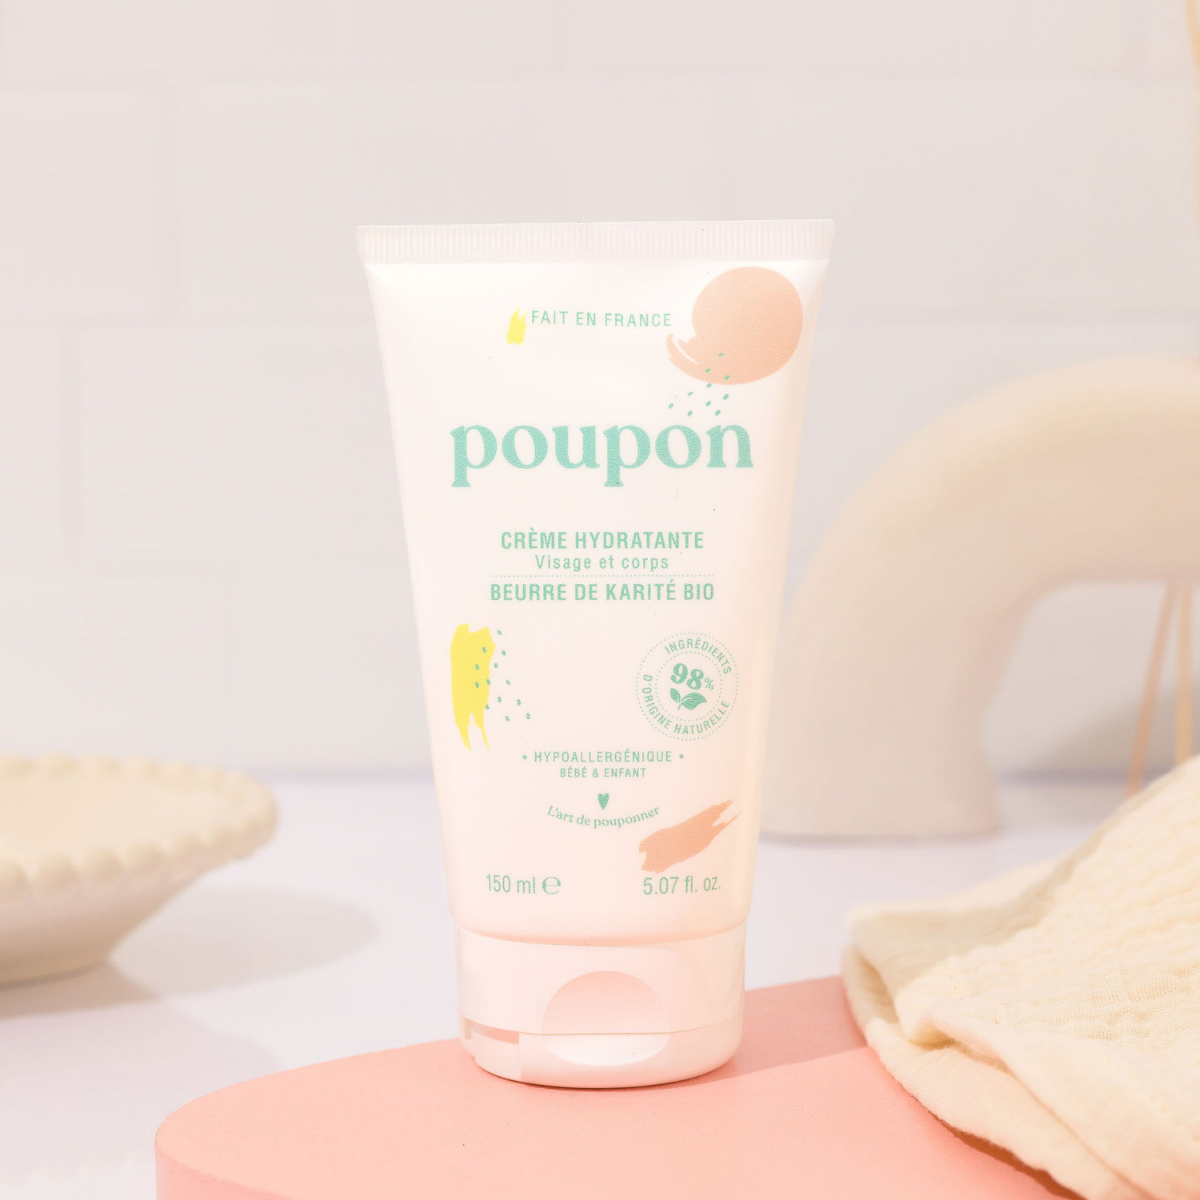 Poupon – Crème hydratante visage et corps